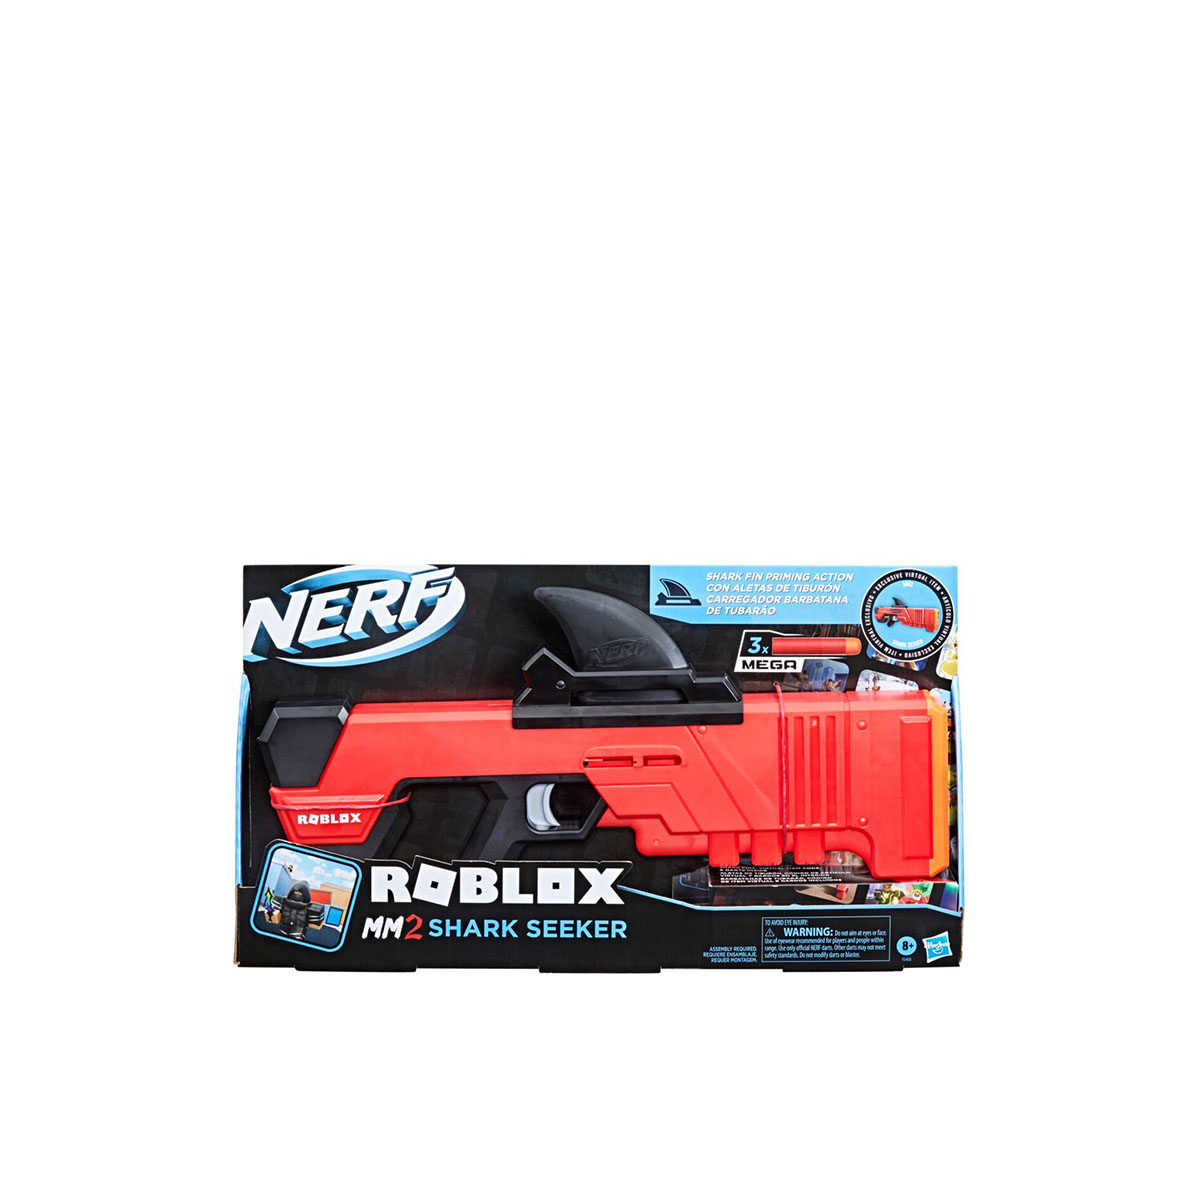 NERF Roblox MM2: Shark Seeker Dart Blaster, Shark-Fin Priming, 3 Mega  Darts, Code to Unlock in-Game Virtual Item: Buy Online at Best Price in UAE  